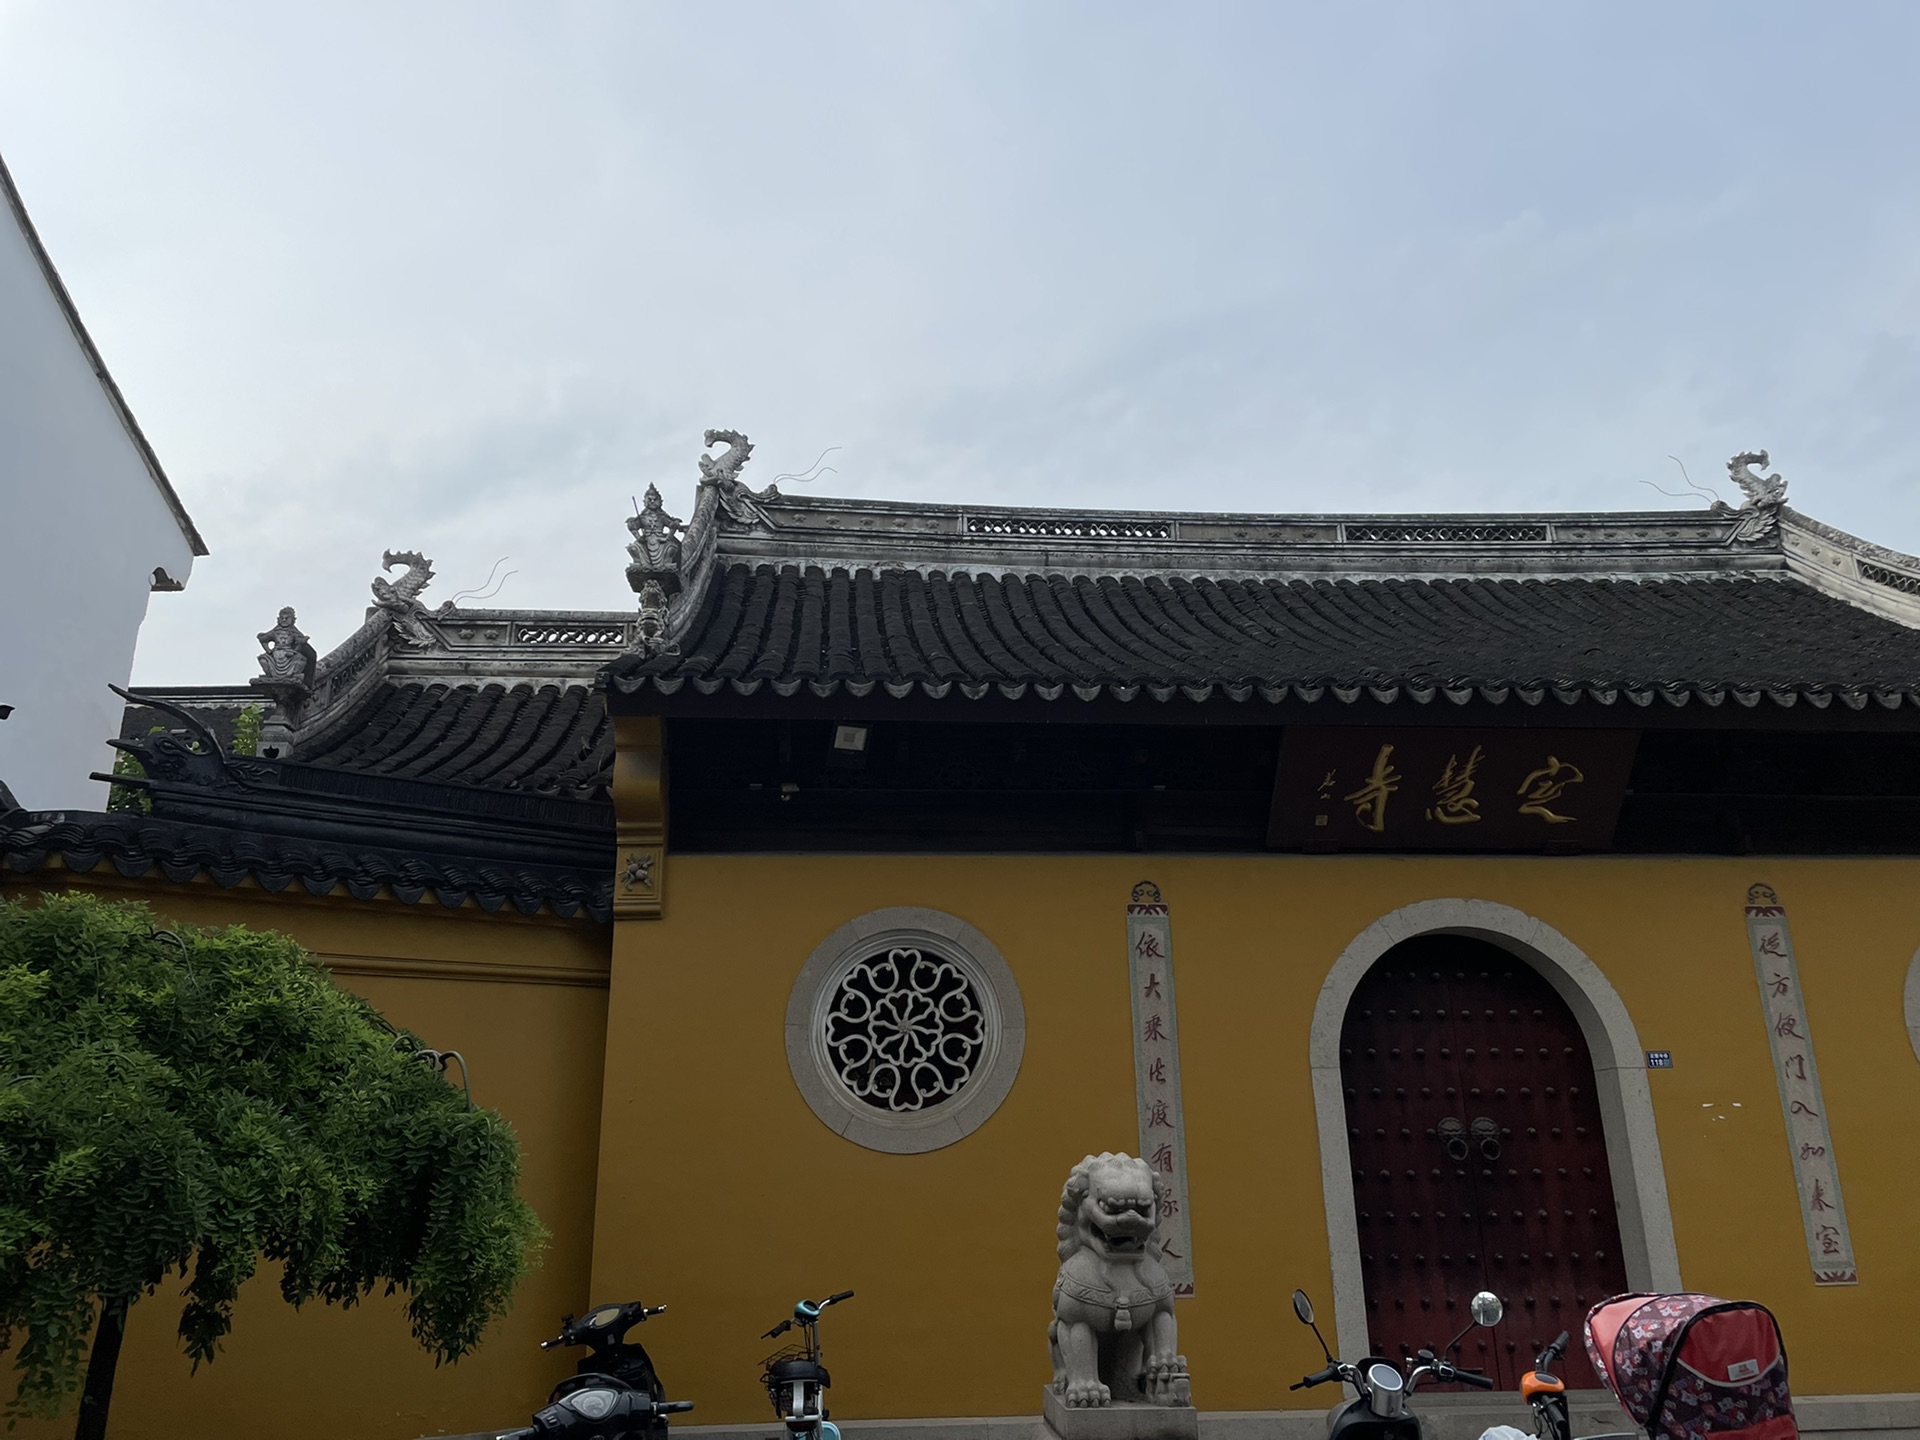 上海出发到苏州 午后的定慧禅寺和双塔市集